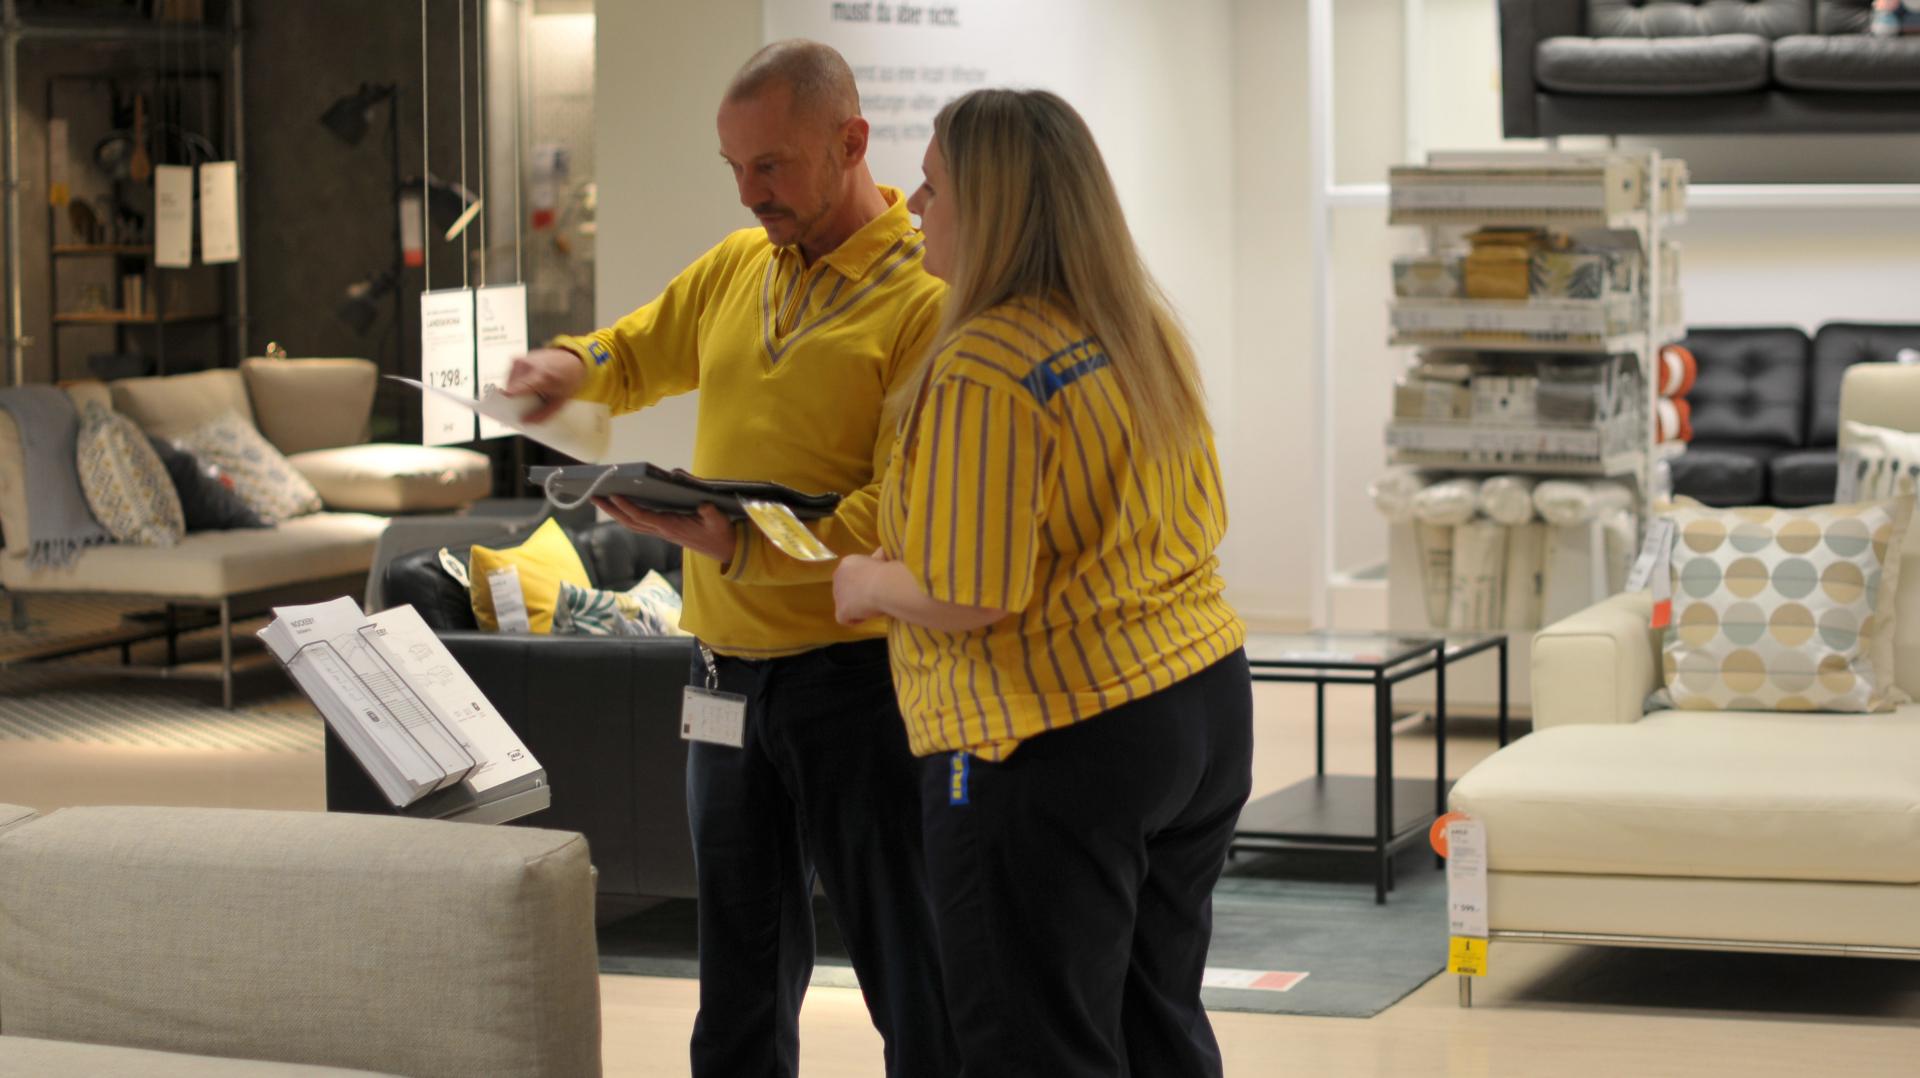 IKEA sucht Mitarbeitende die zur Firmenkultur passen, ihre Werte teilen und sich für Heimeinrichtung interessieren.